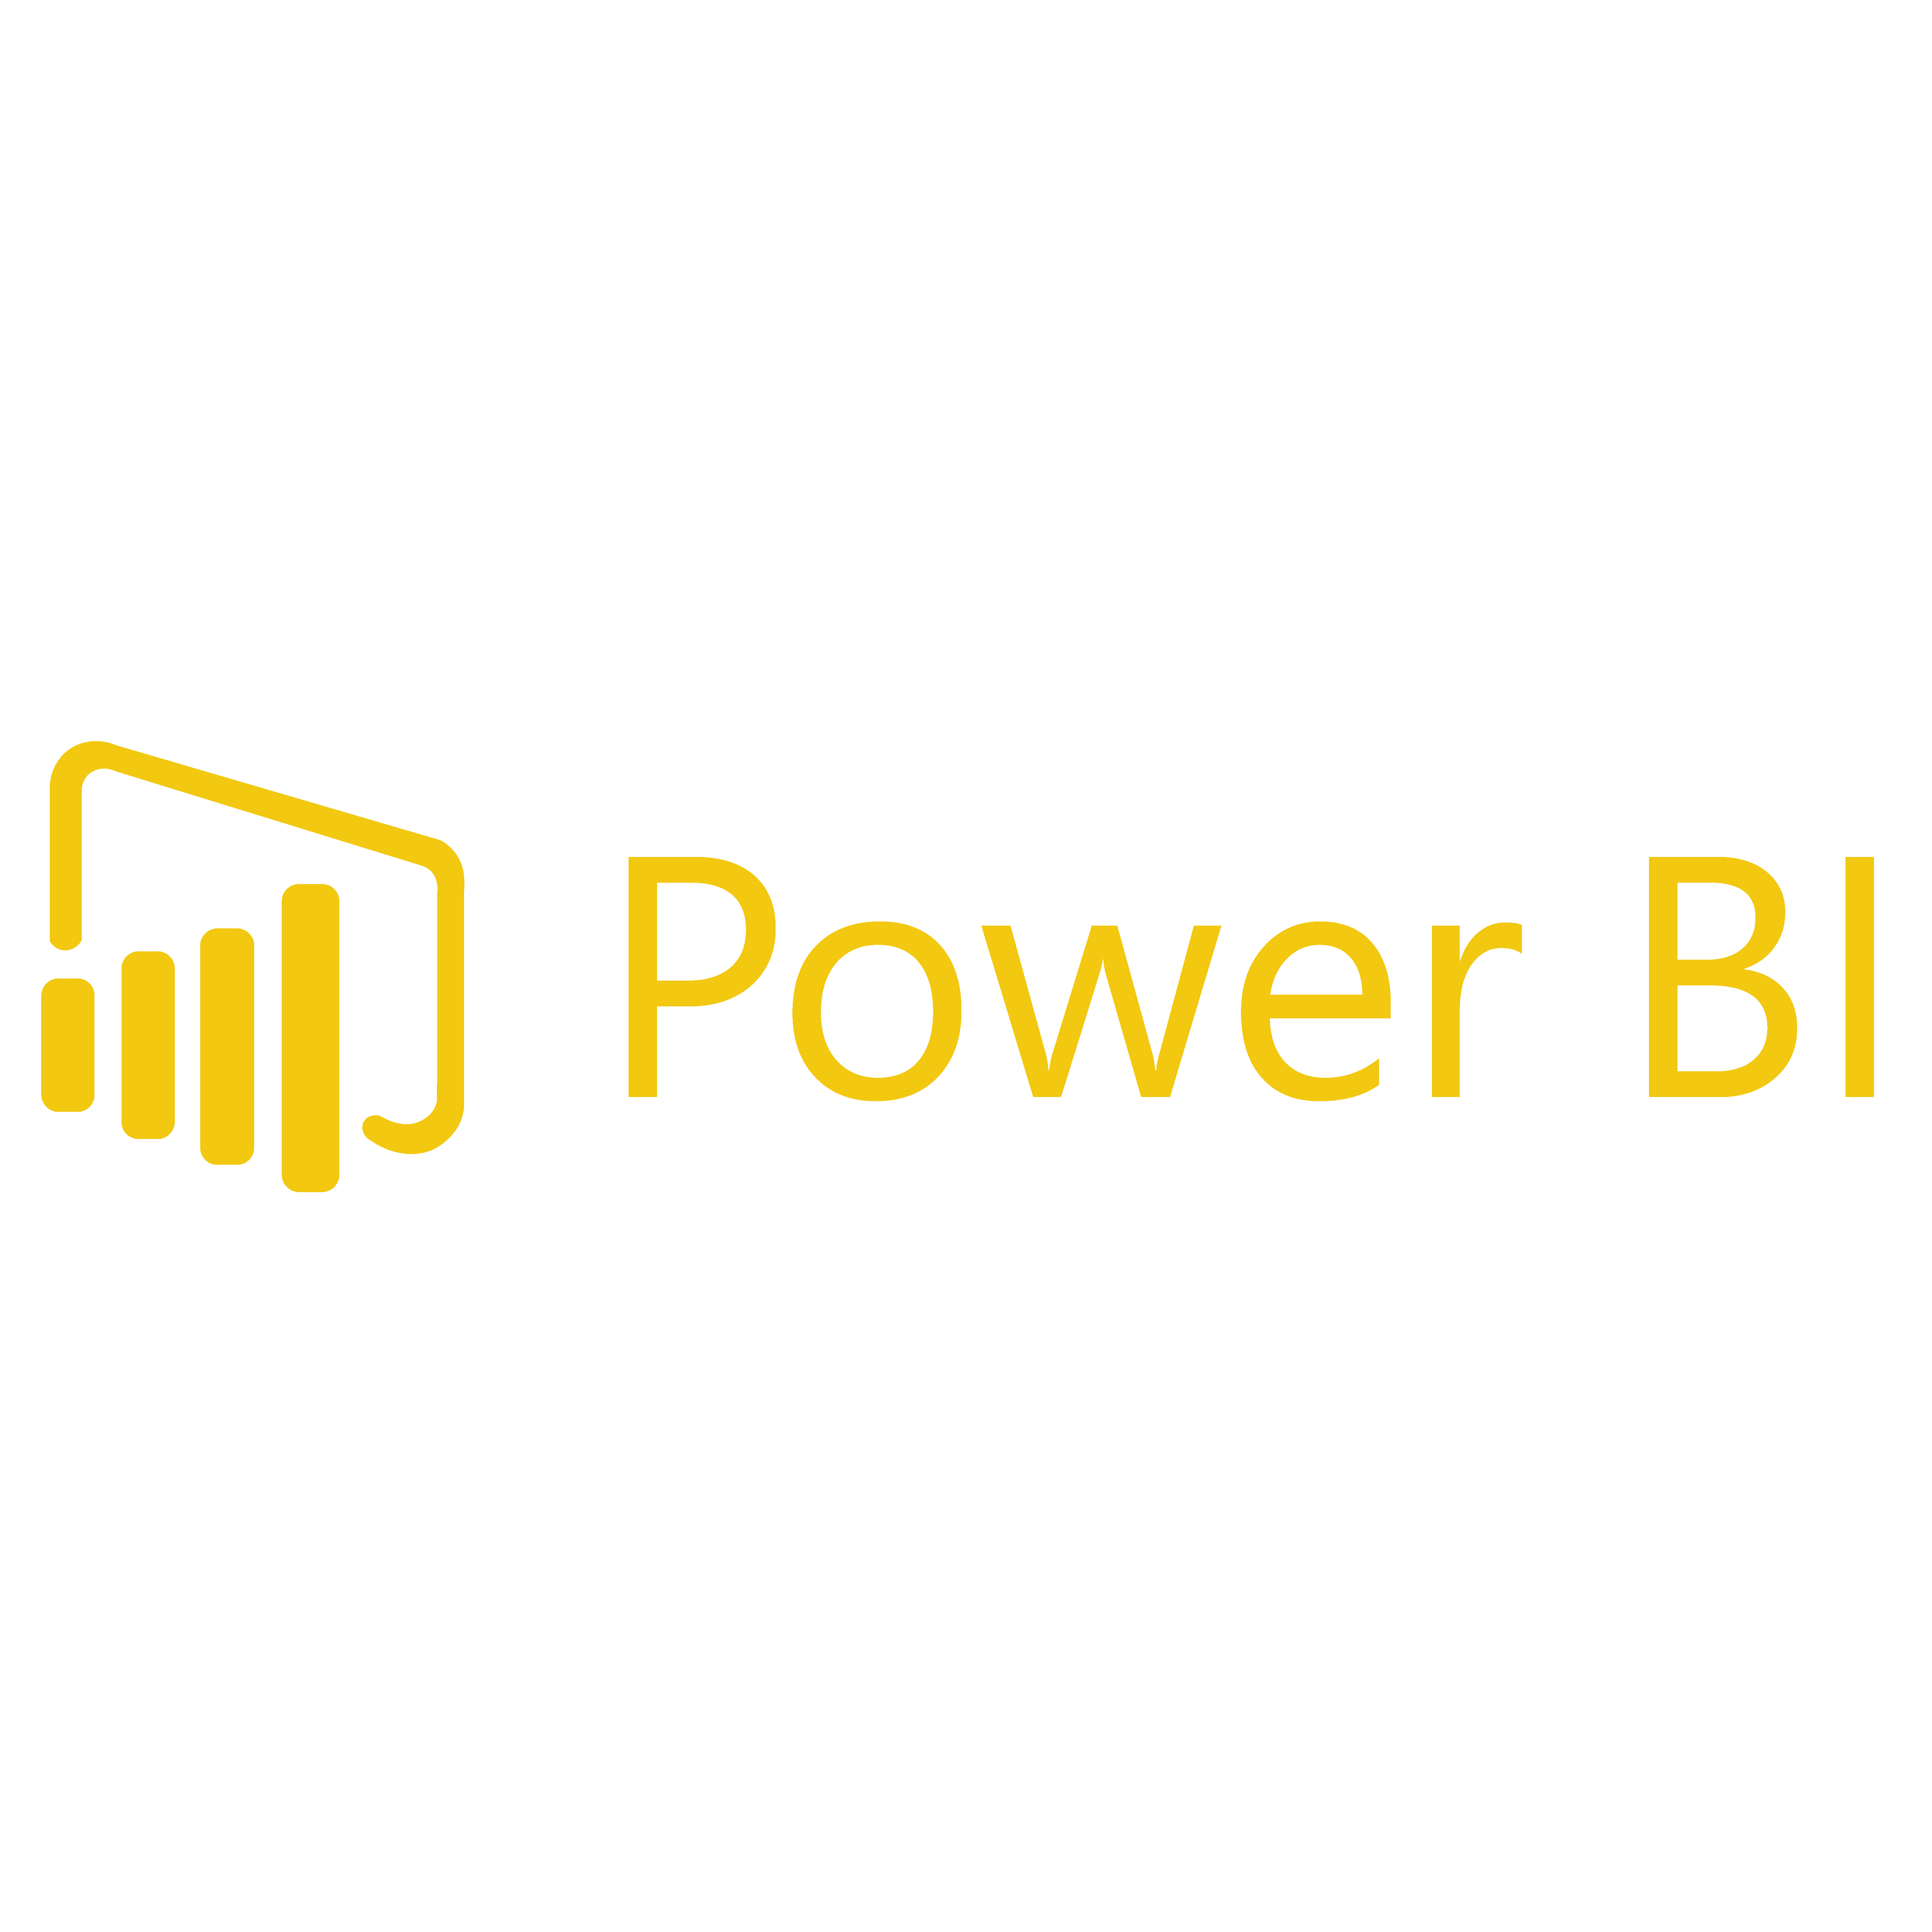 Значок Power bi. MS Power bi логотип. Power bi логотип без фона.  Microsoft Power bi лого jpg. Power bi download